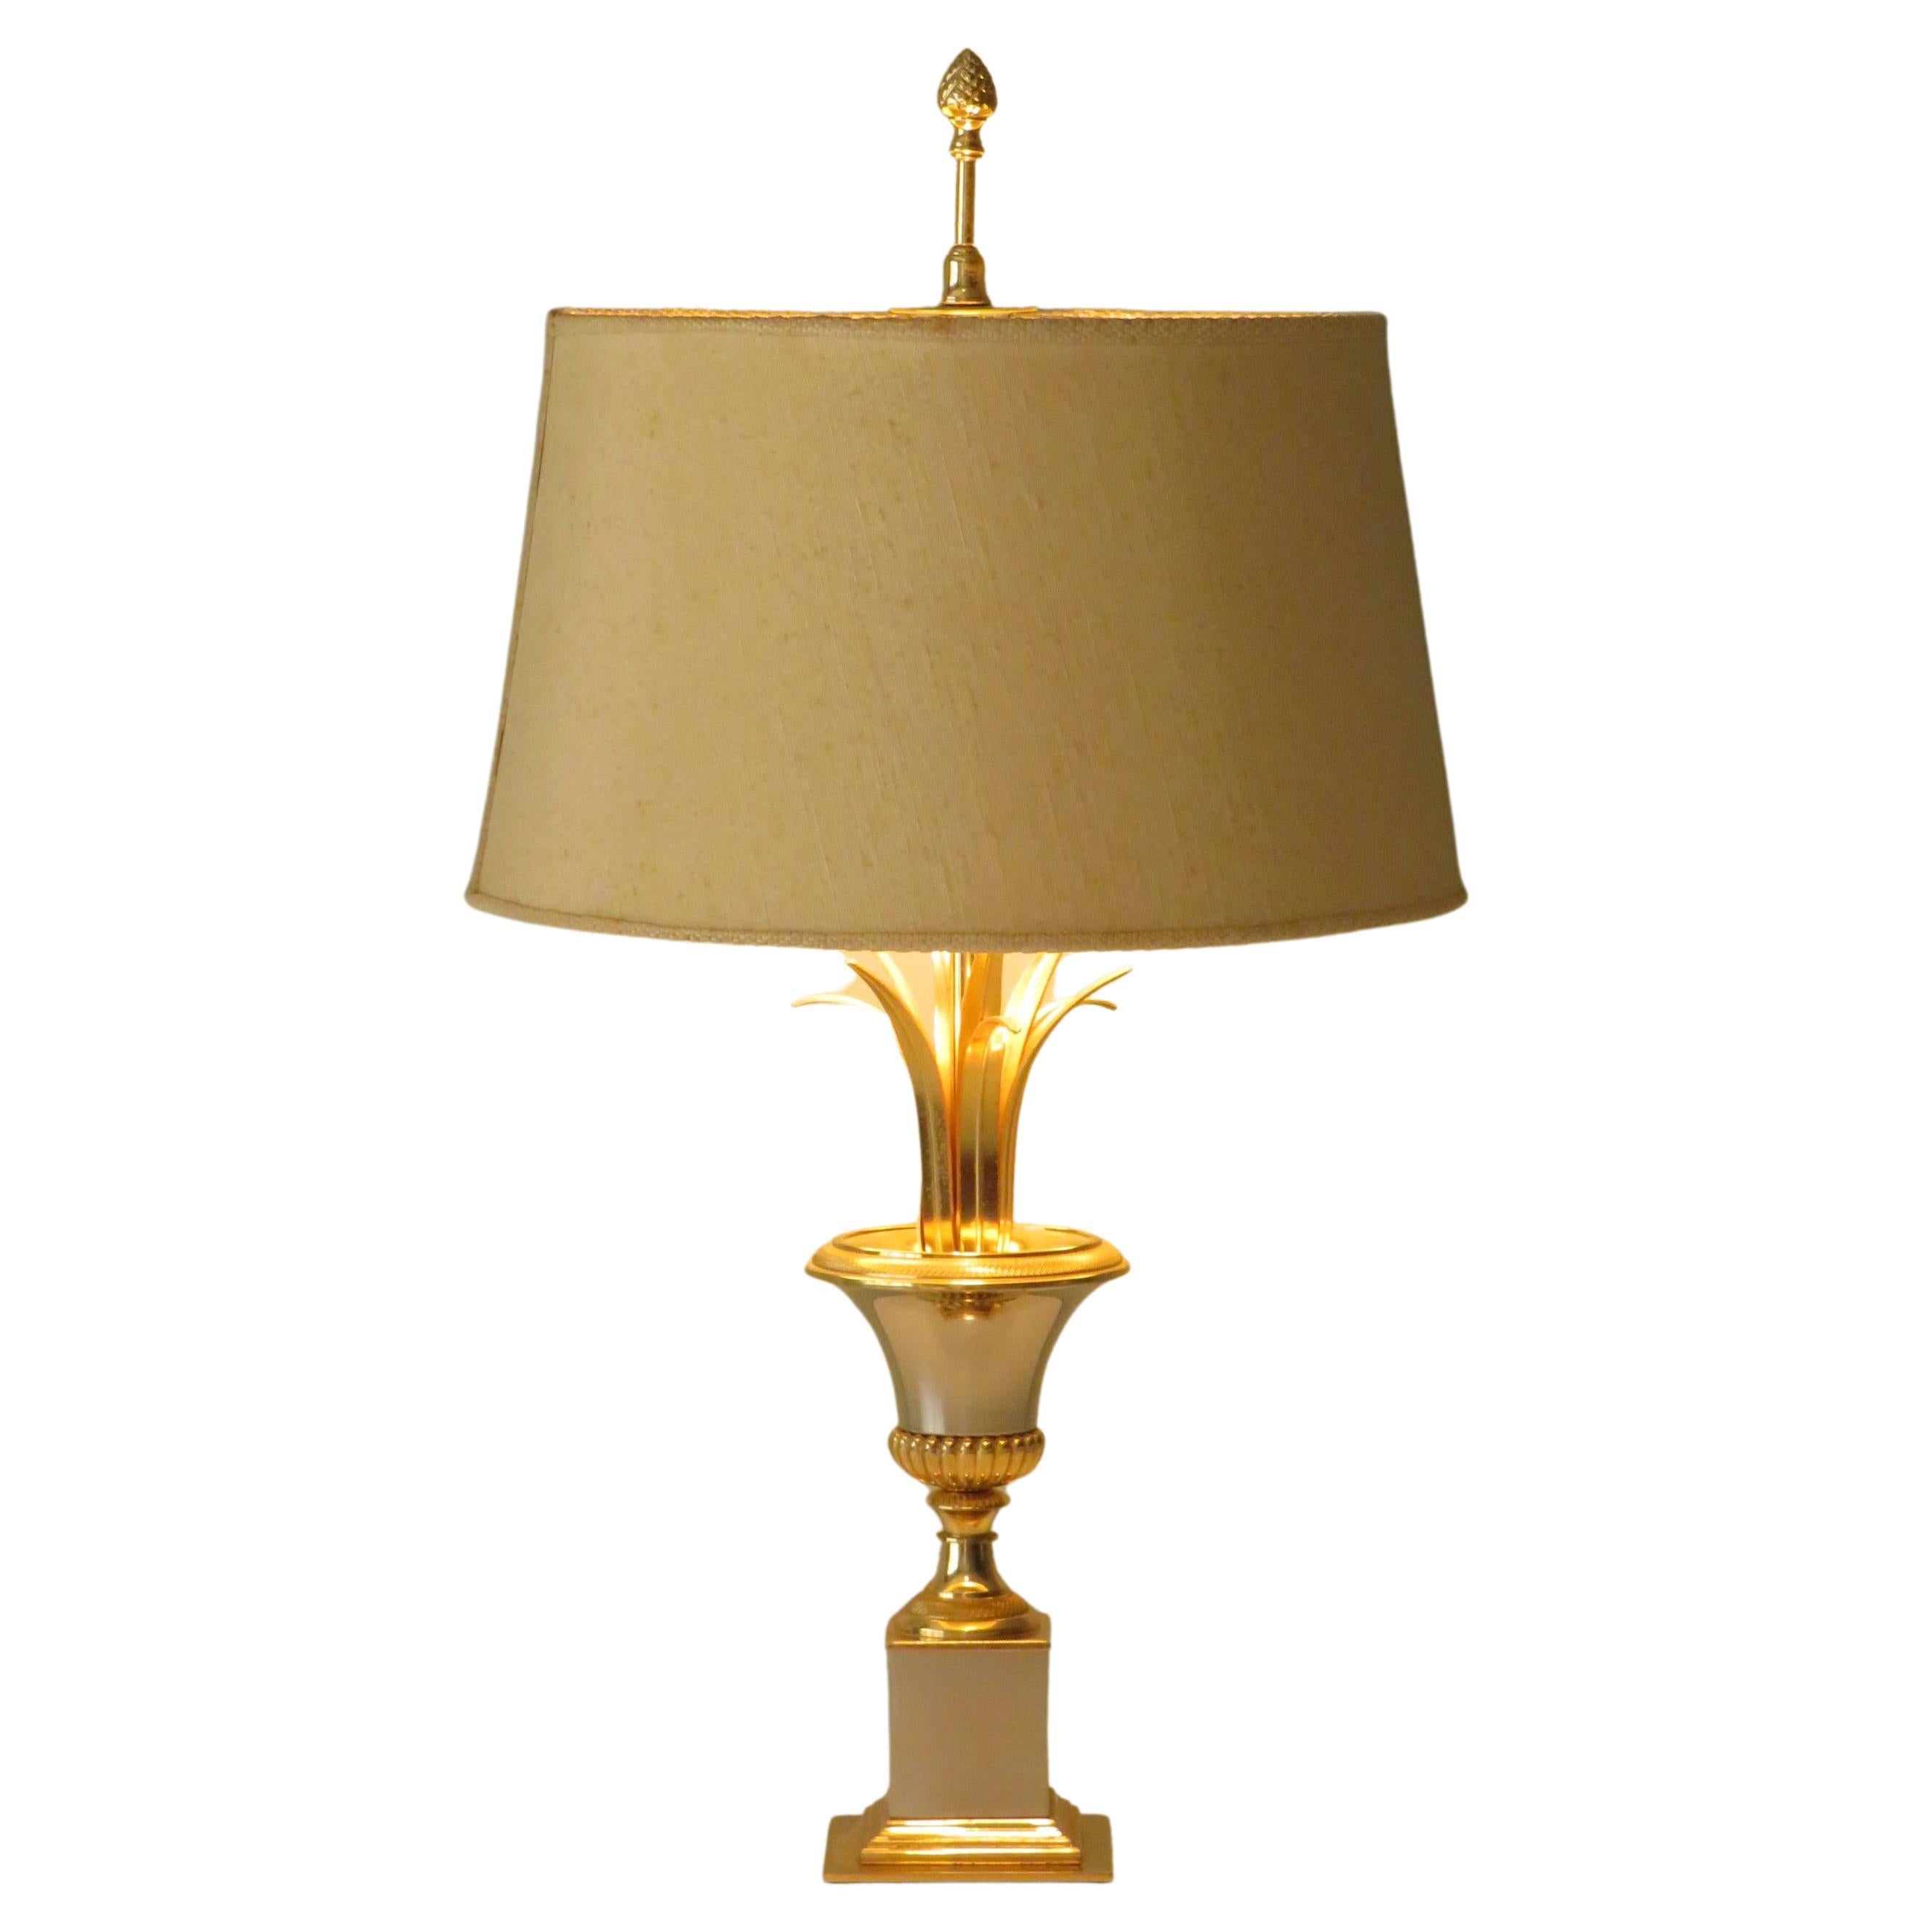 Lampe de table Palm Hollywood Regency de SA Boulanger dans le style de la Maison Jansen